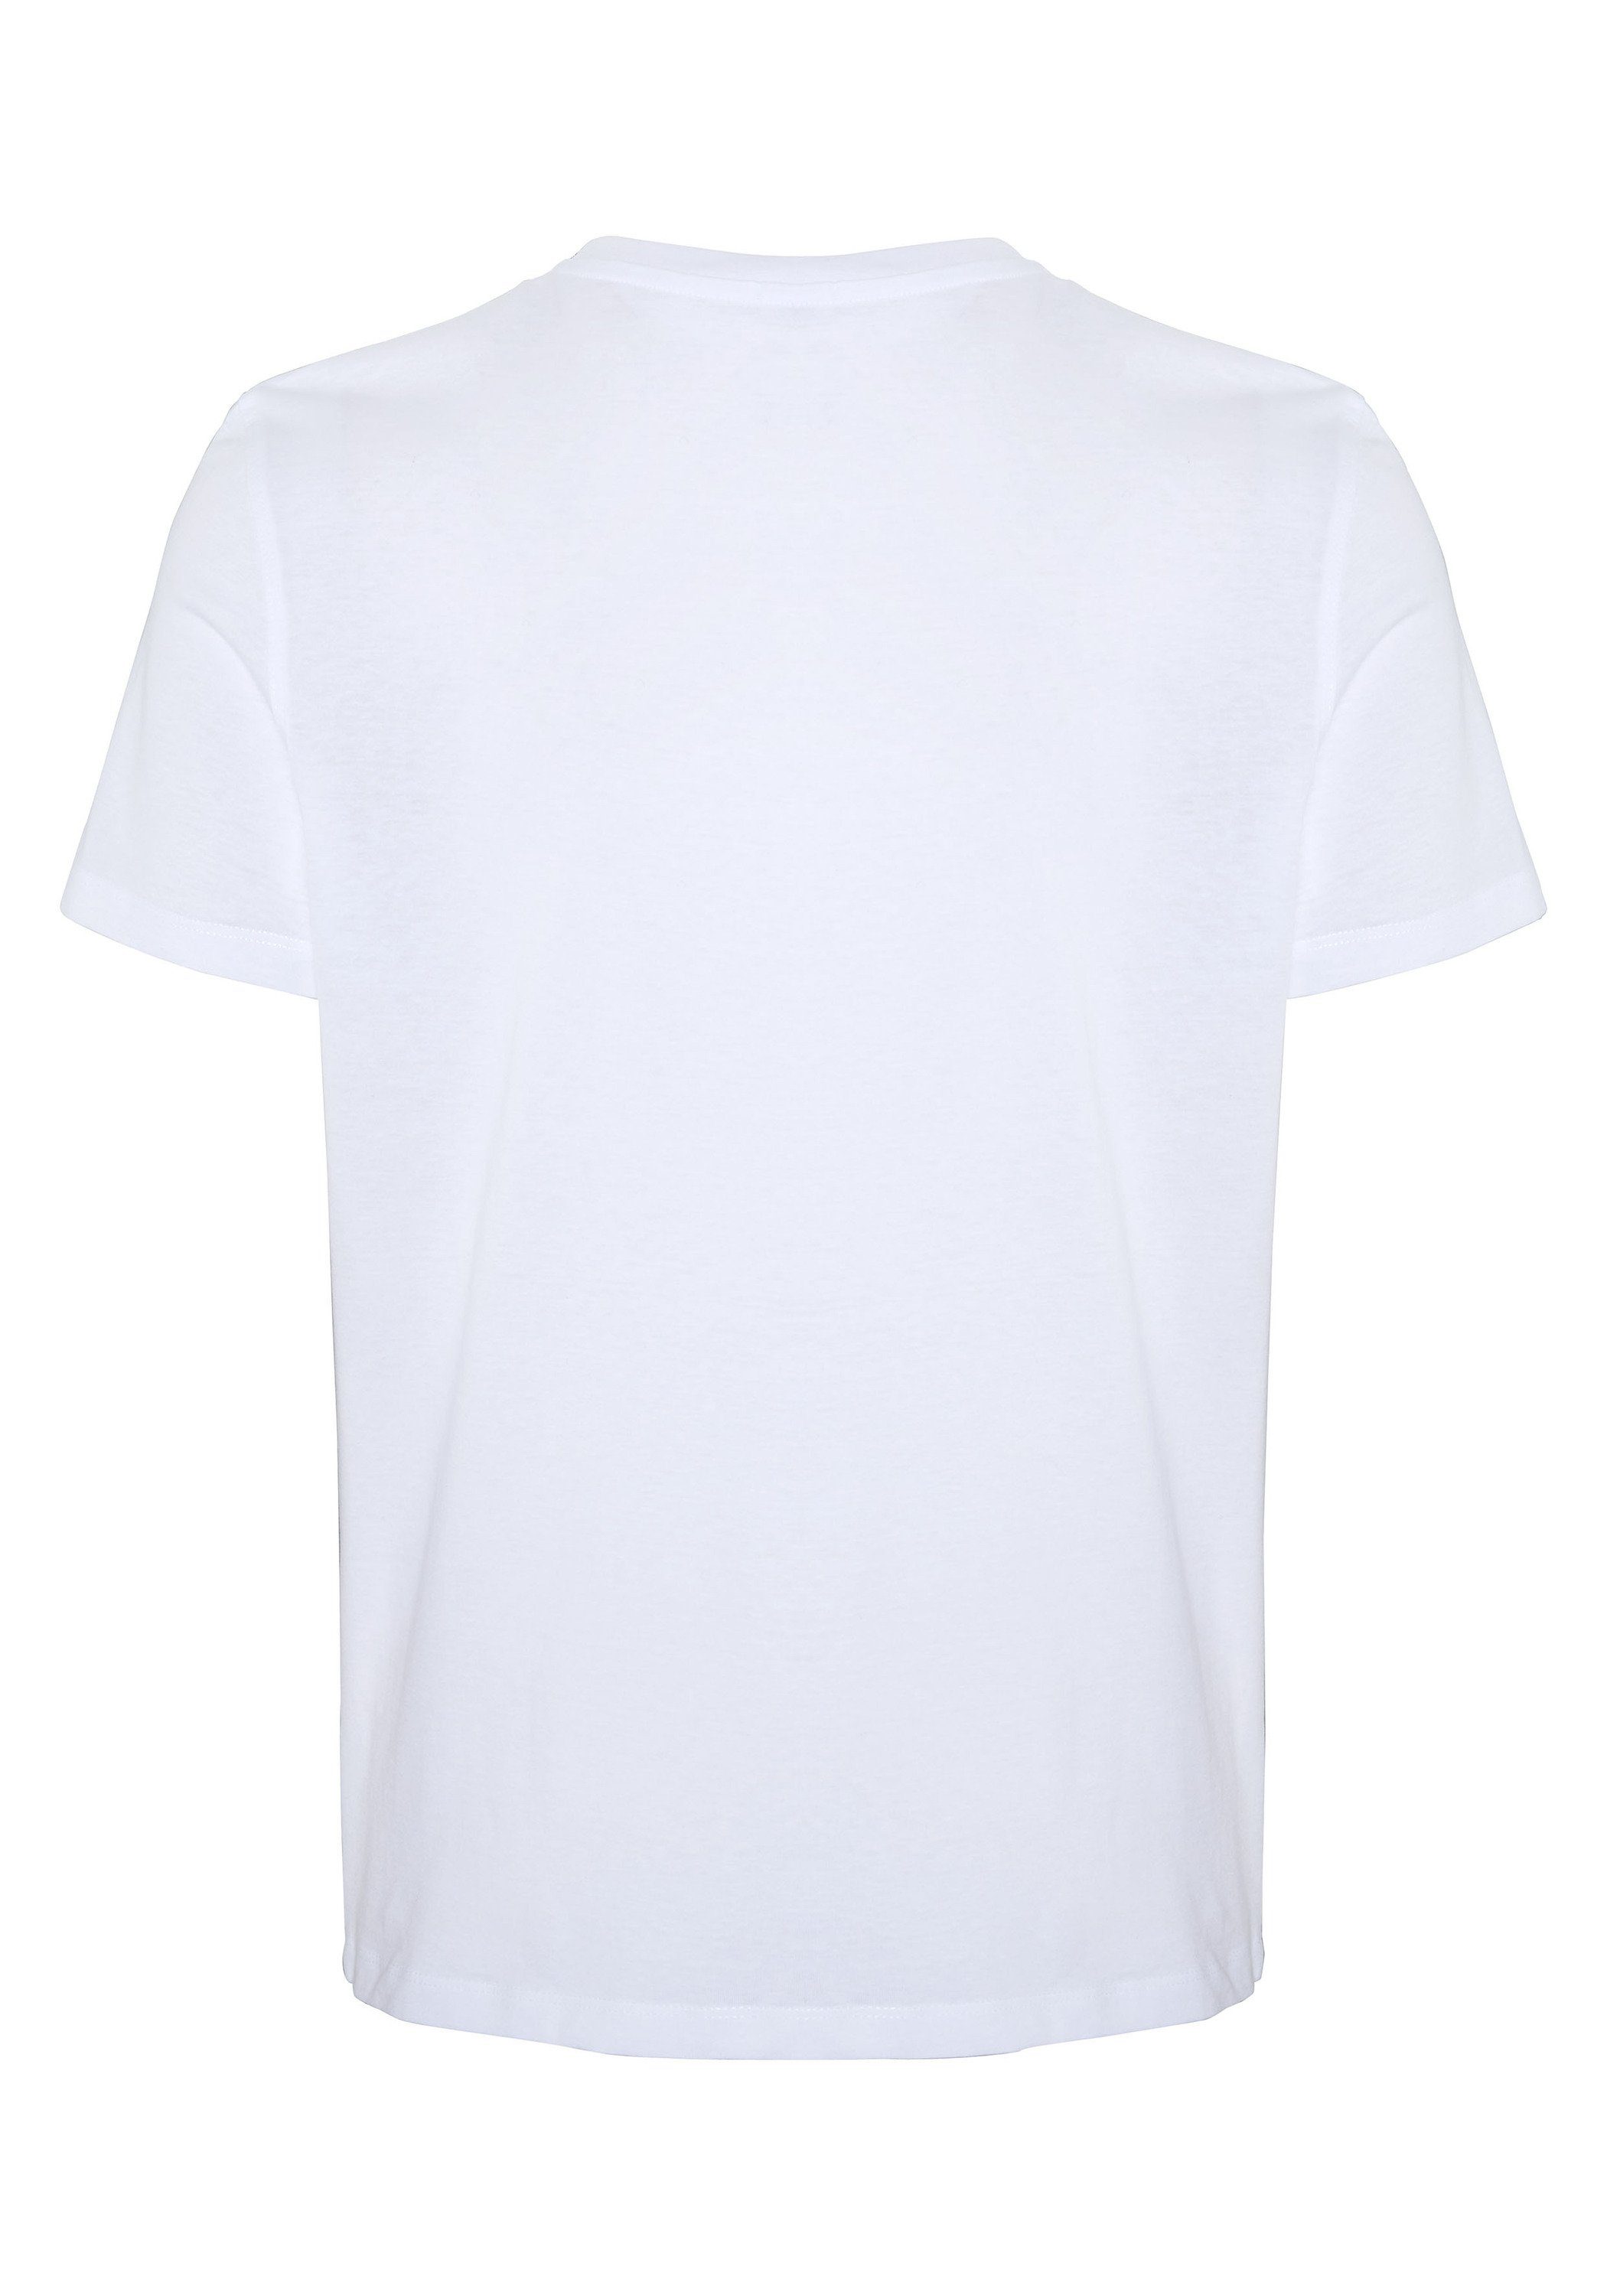 COLORADO DENIM 11-0601 Sweatware White aus Bright weicher Print-Shirt